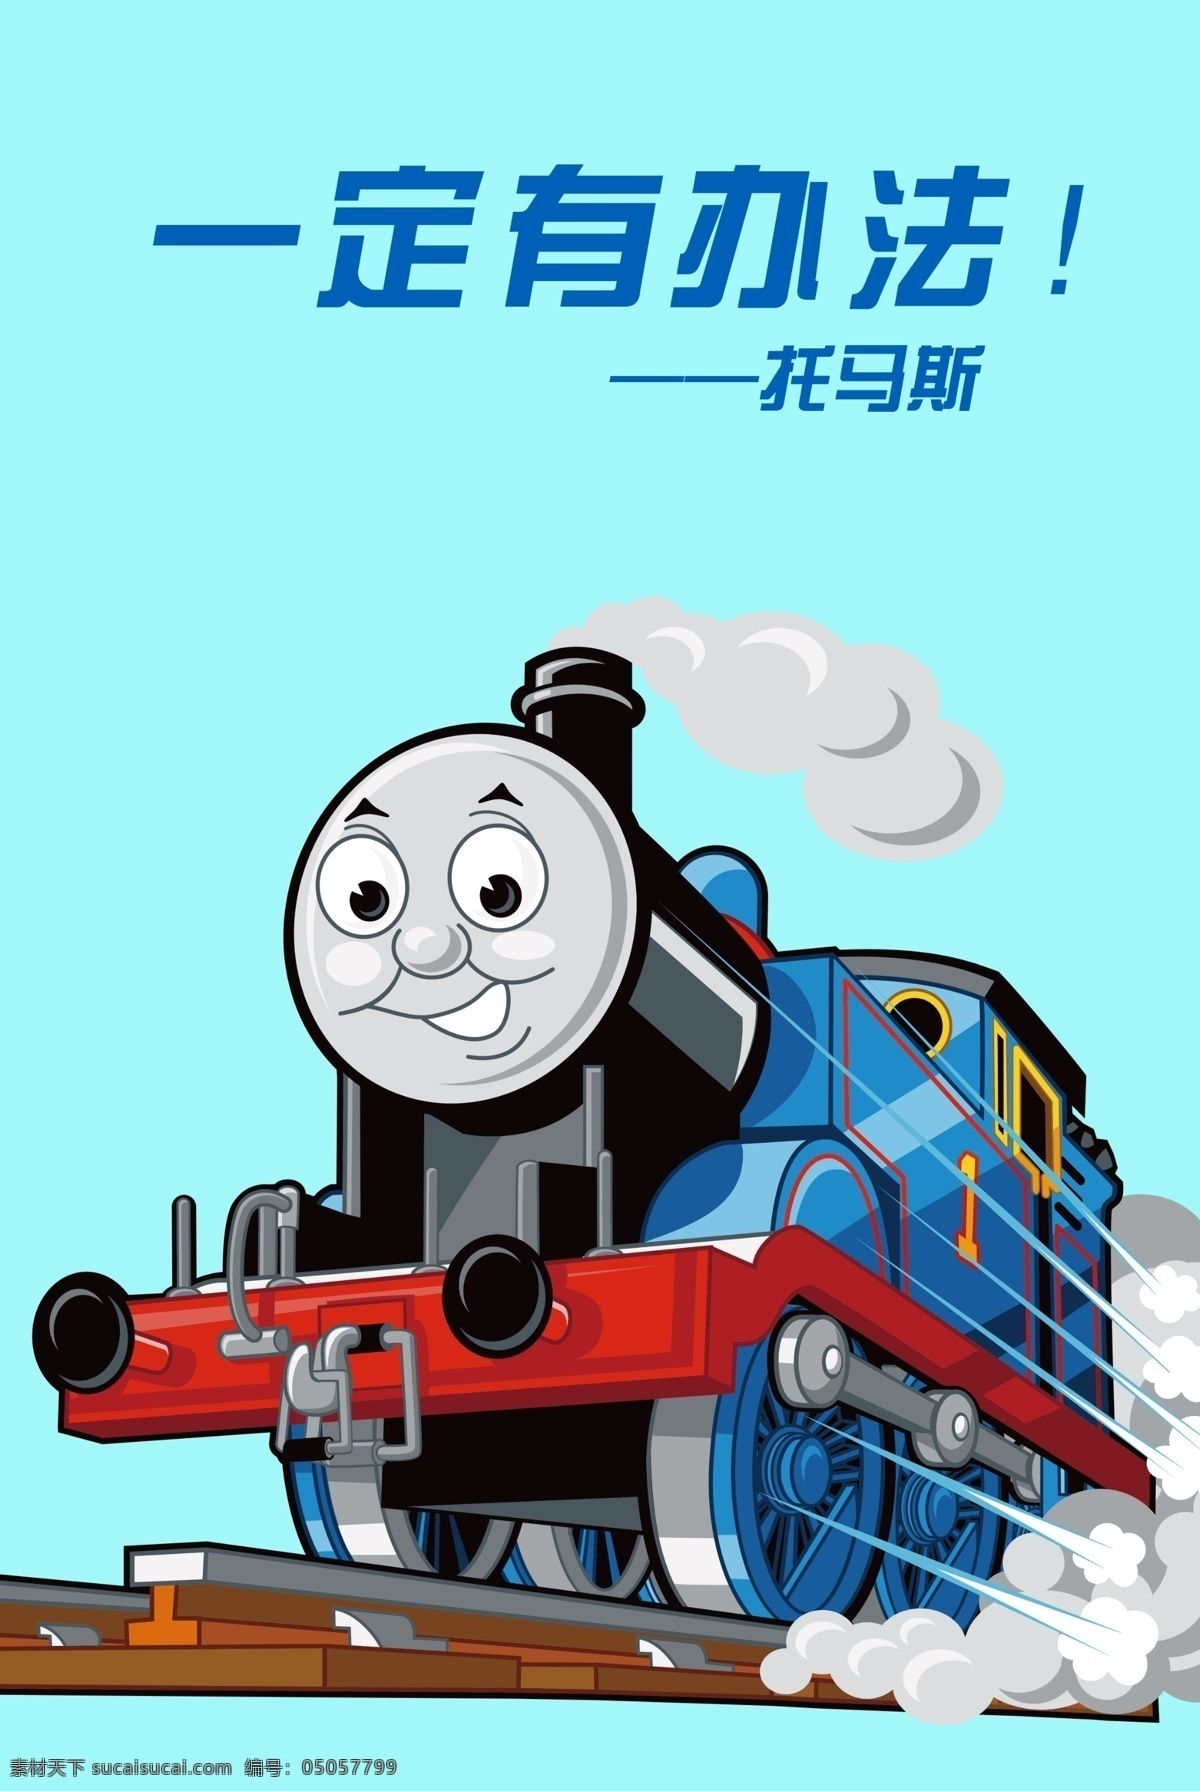 托马斯 小火车 蓝色 卡 高登 卡通 励志 孩子 铁轨